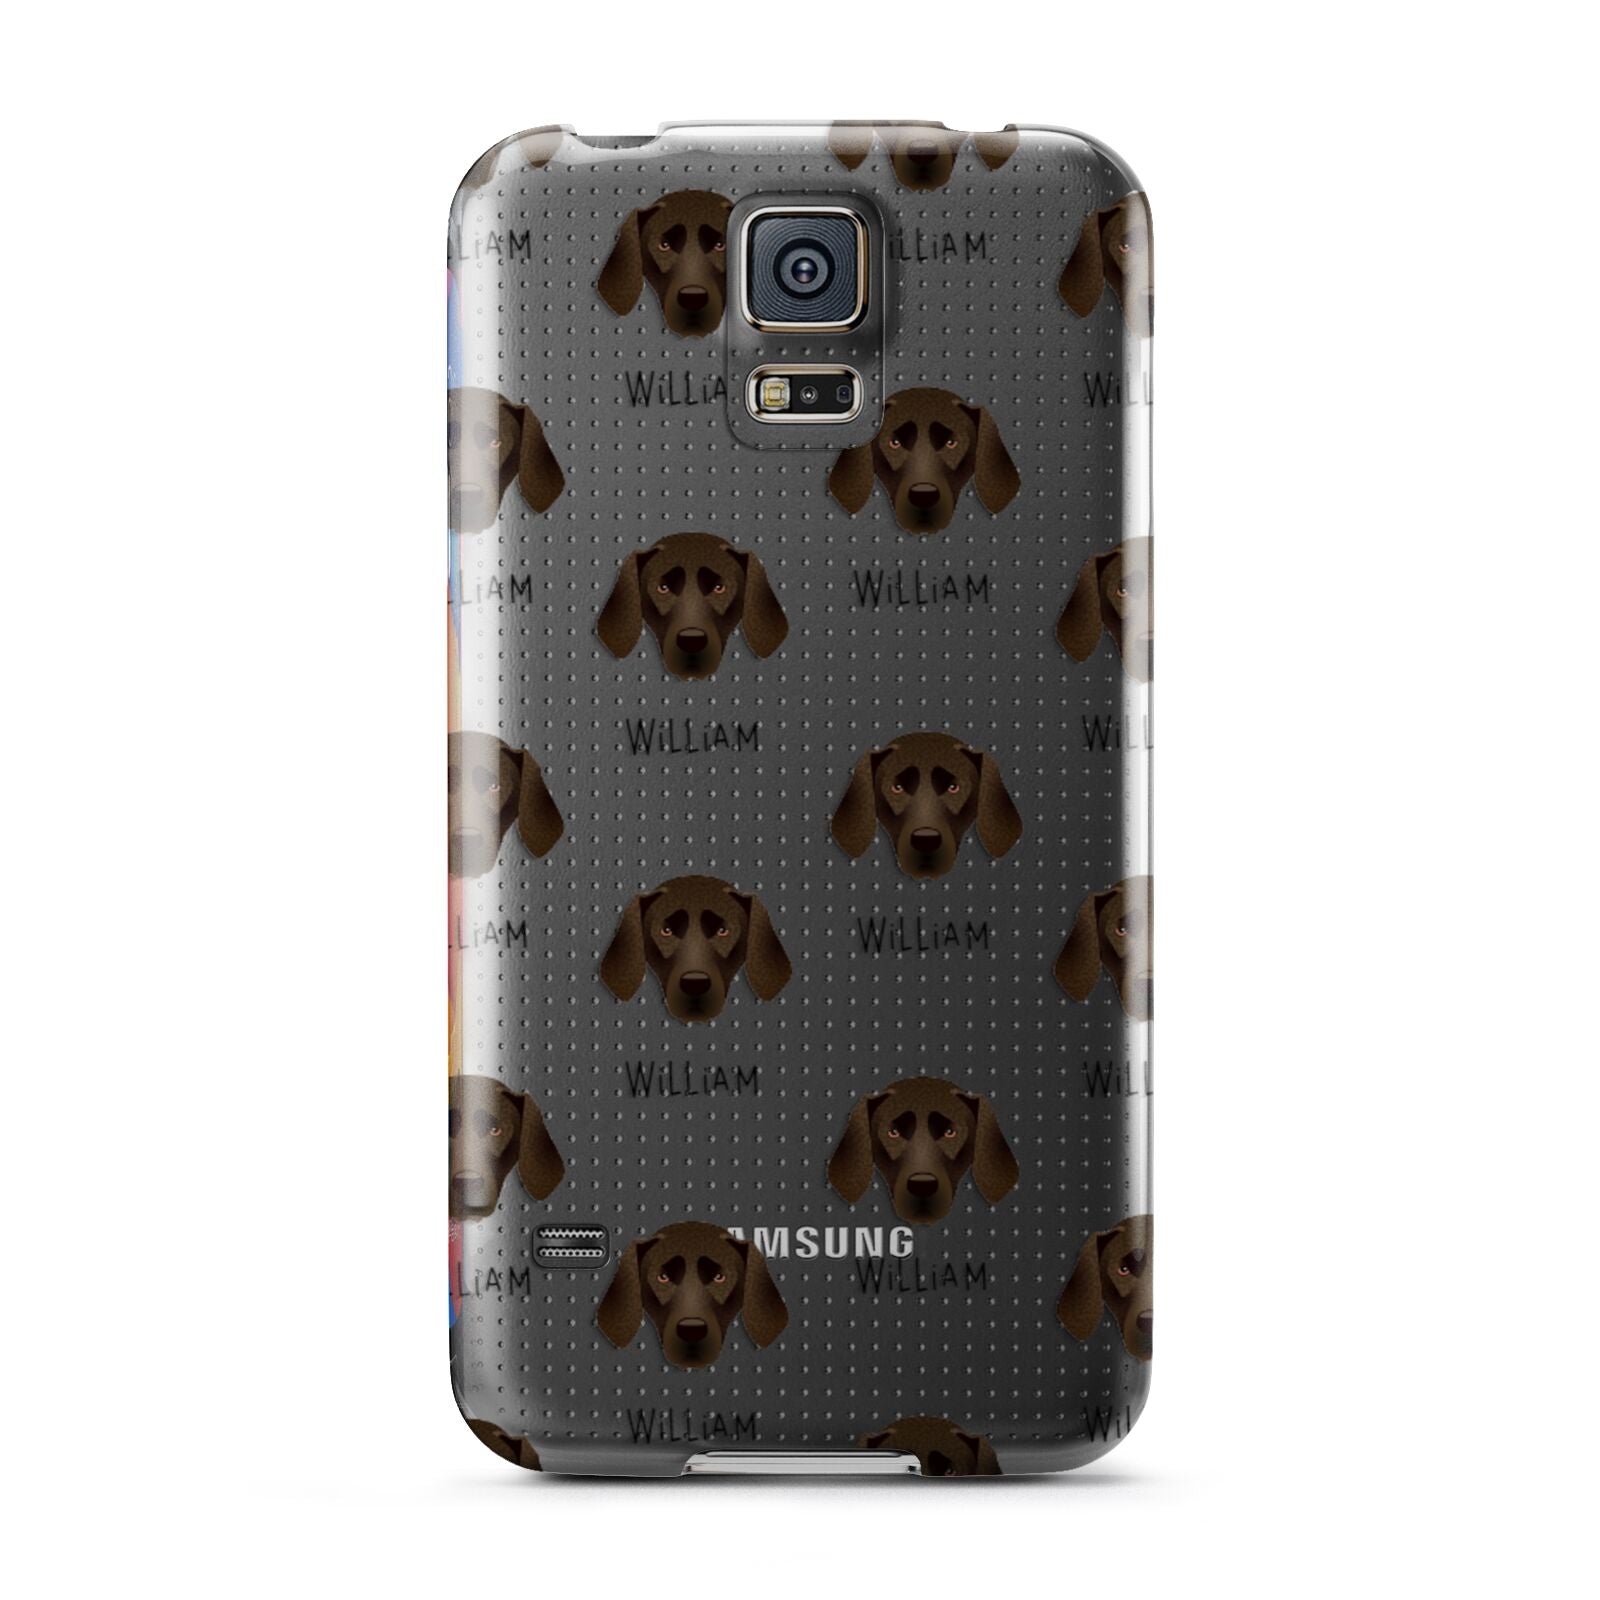 Plott Hound Icon with Name Samsung Galaxy S5 Case